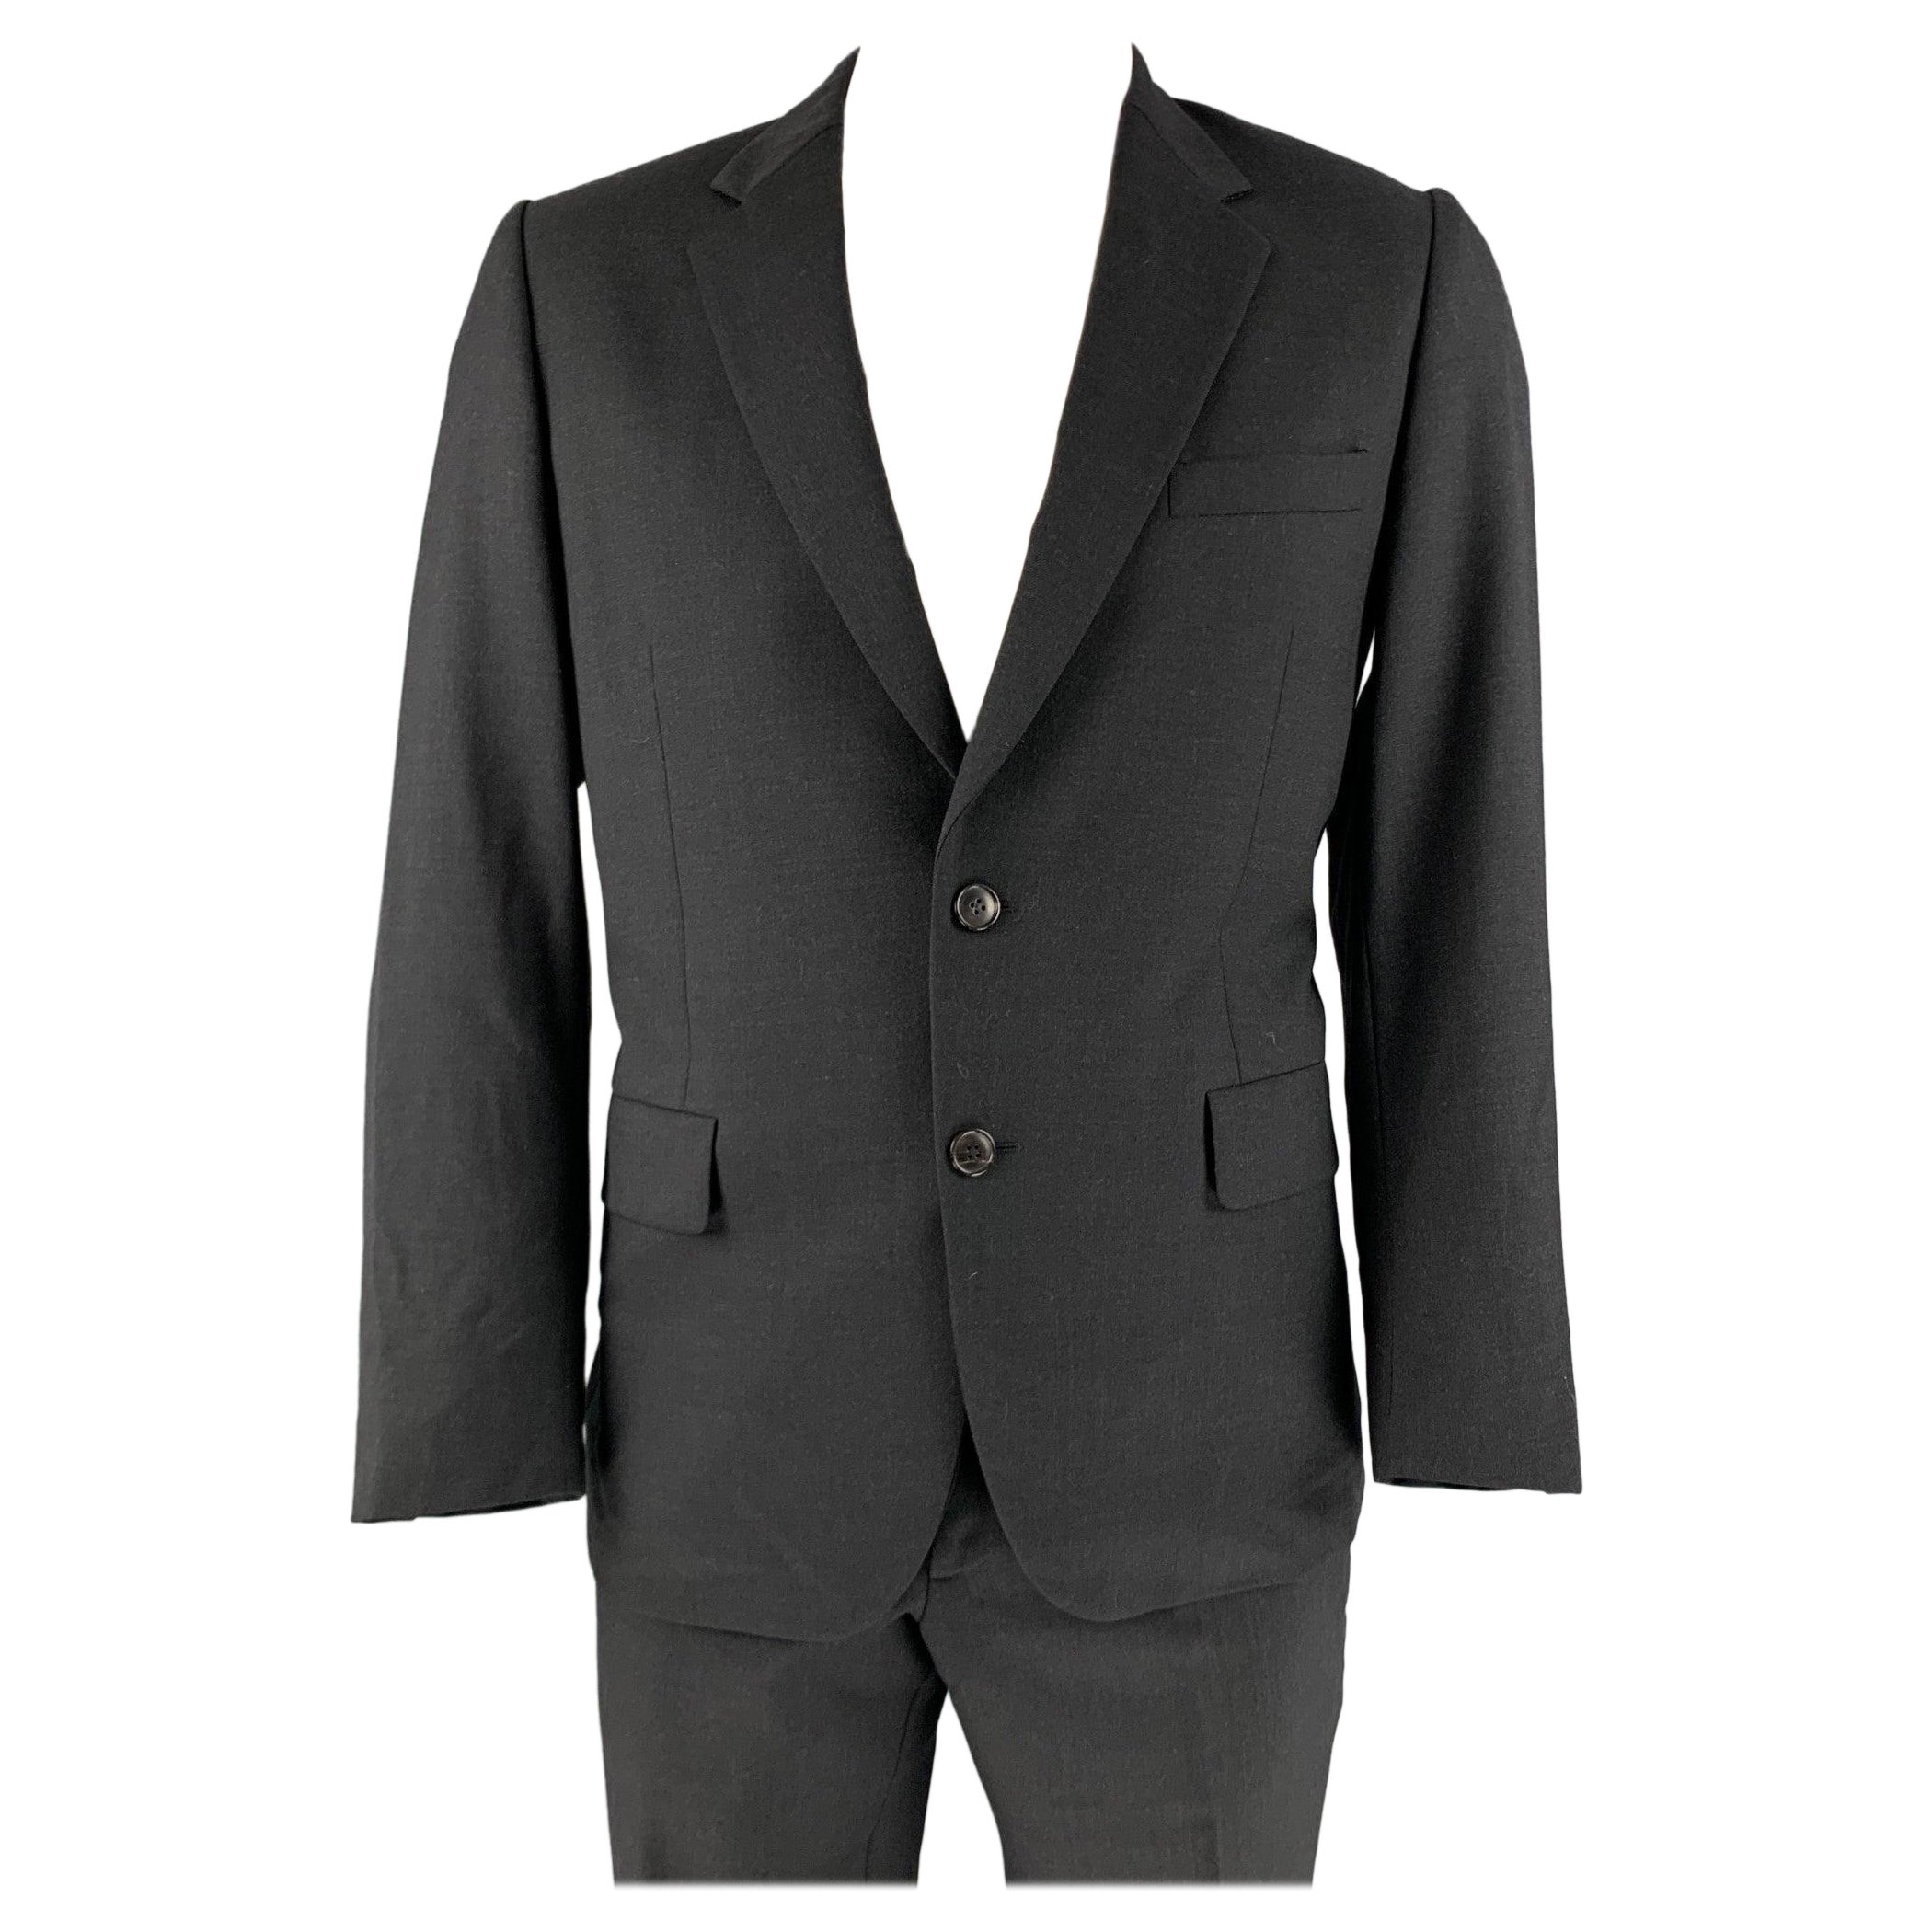 PAUL SMITH Size 42 Black Wool Notch Lapel Suit For Sale